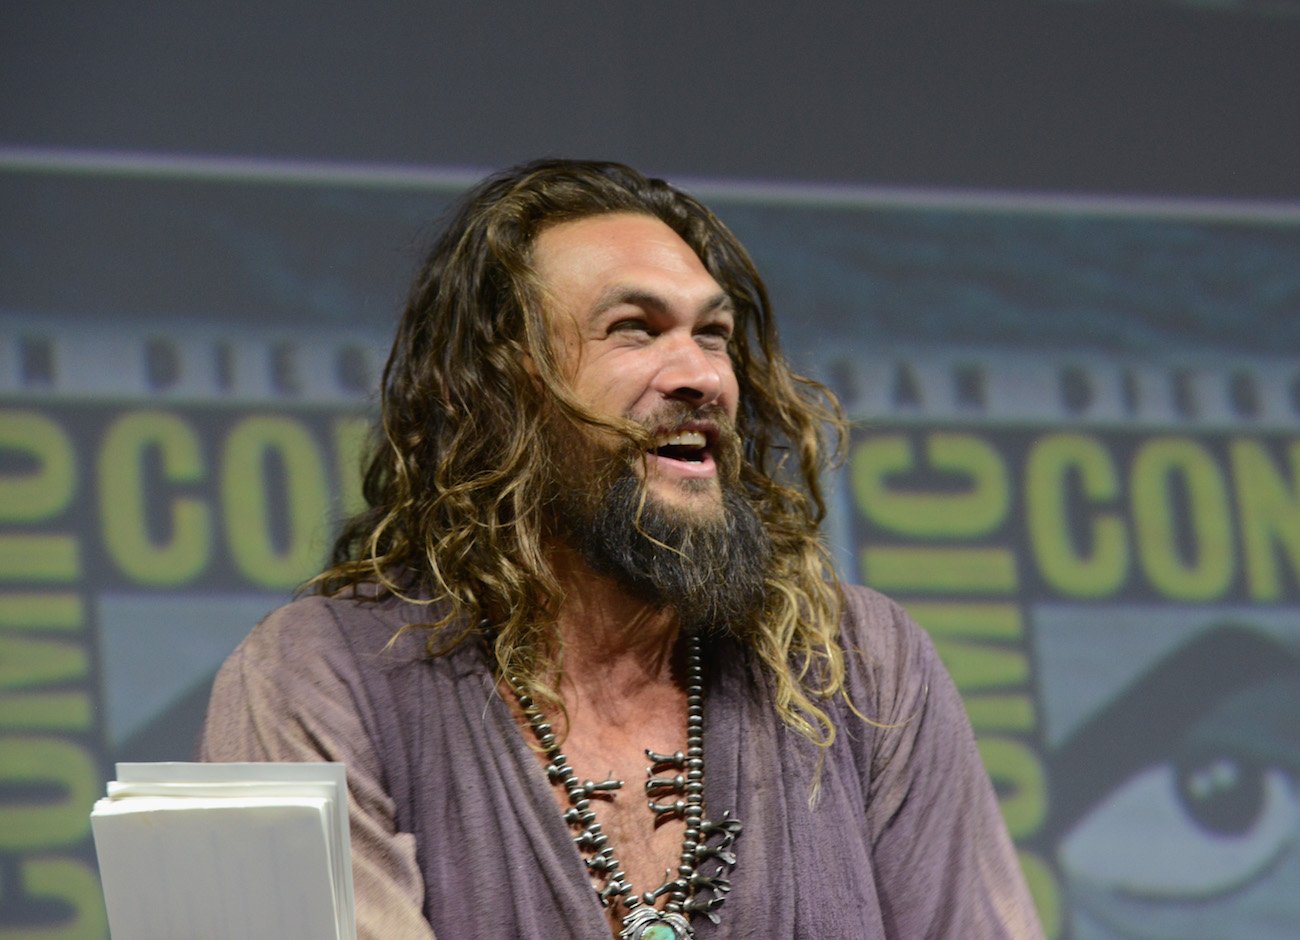 Jason Momoa at the panel for 'Aquaman' at Comic-Con.